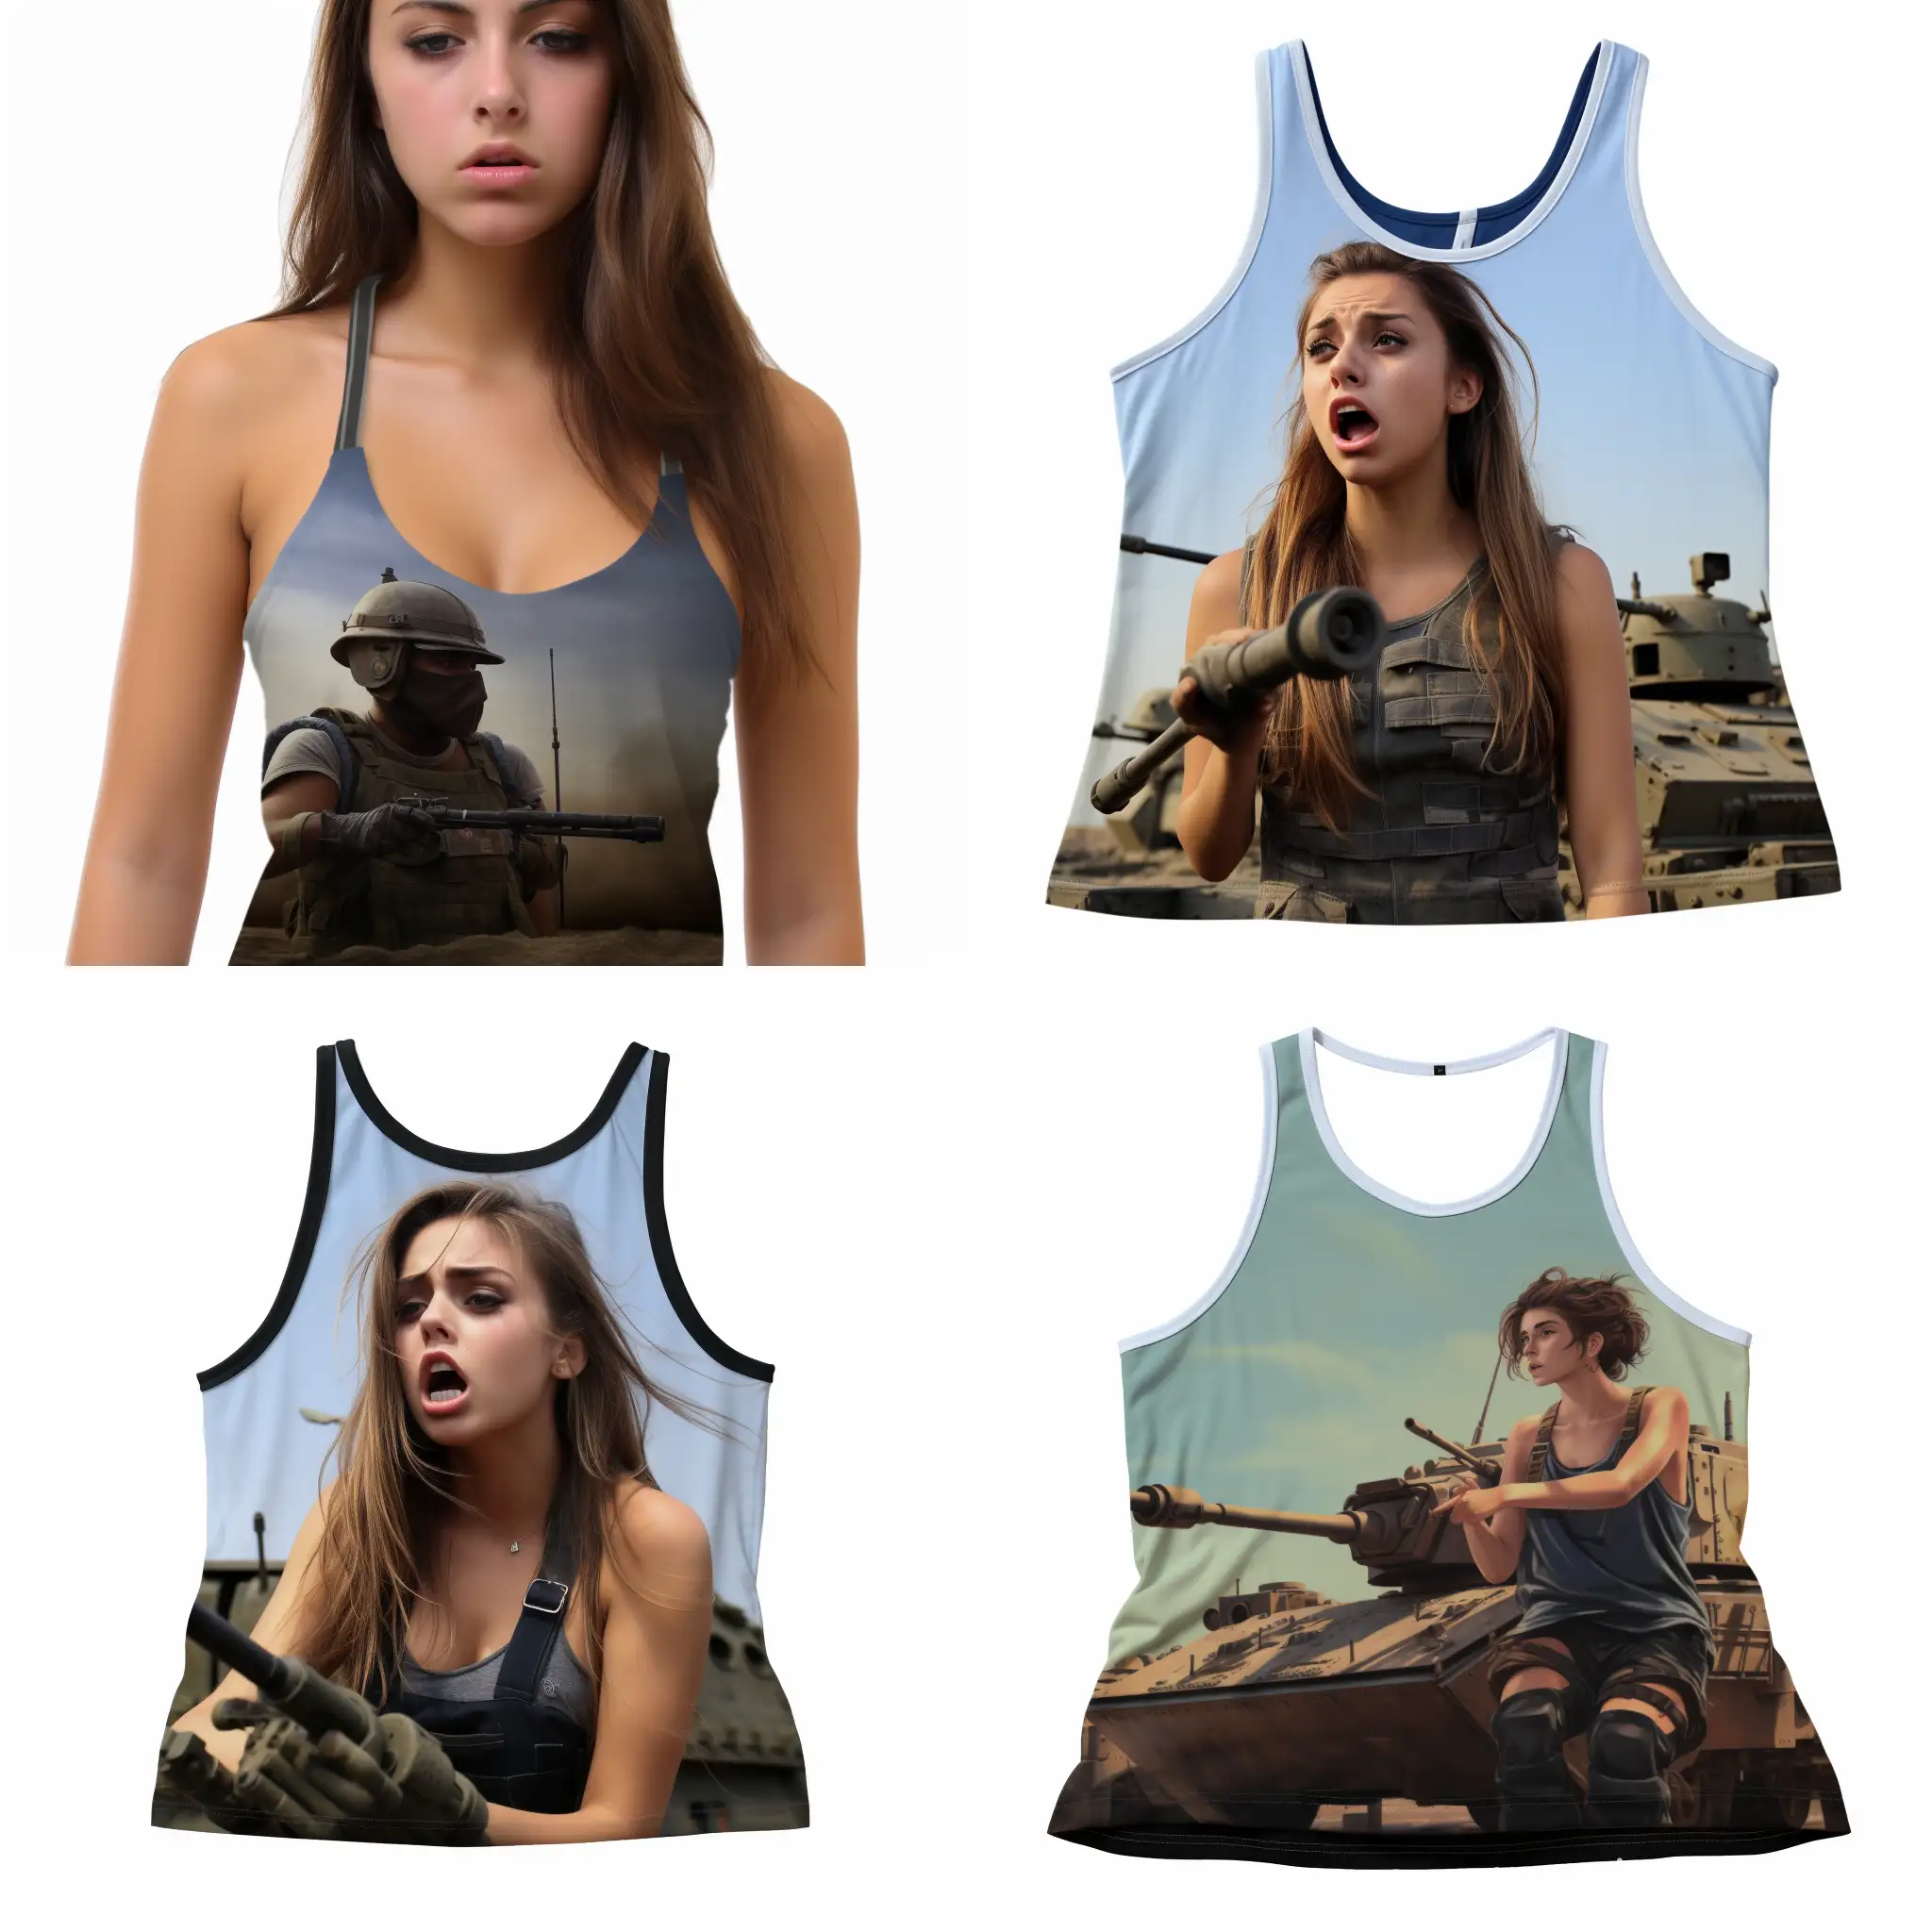 Scared-Italian-Teen-Soldier-Girls-Surrendering-in-Tank-Tops